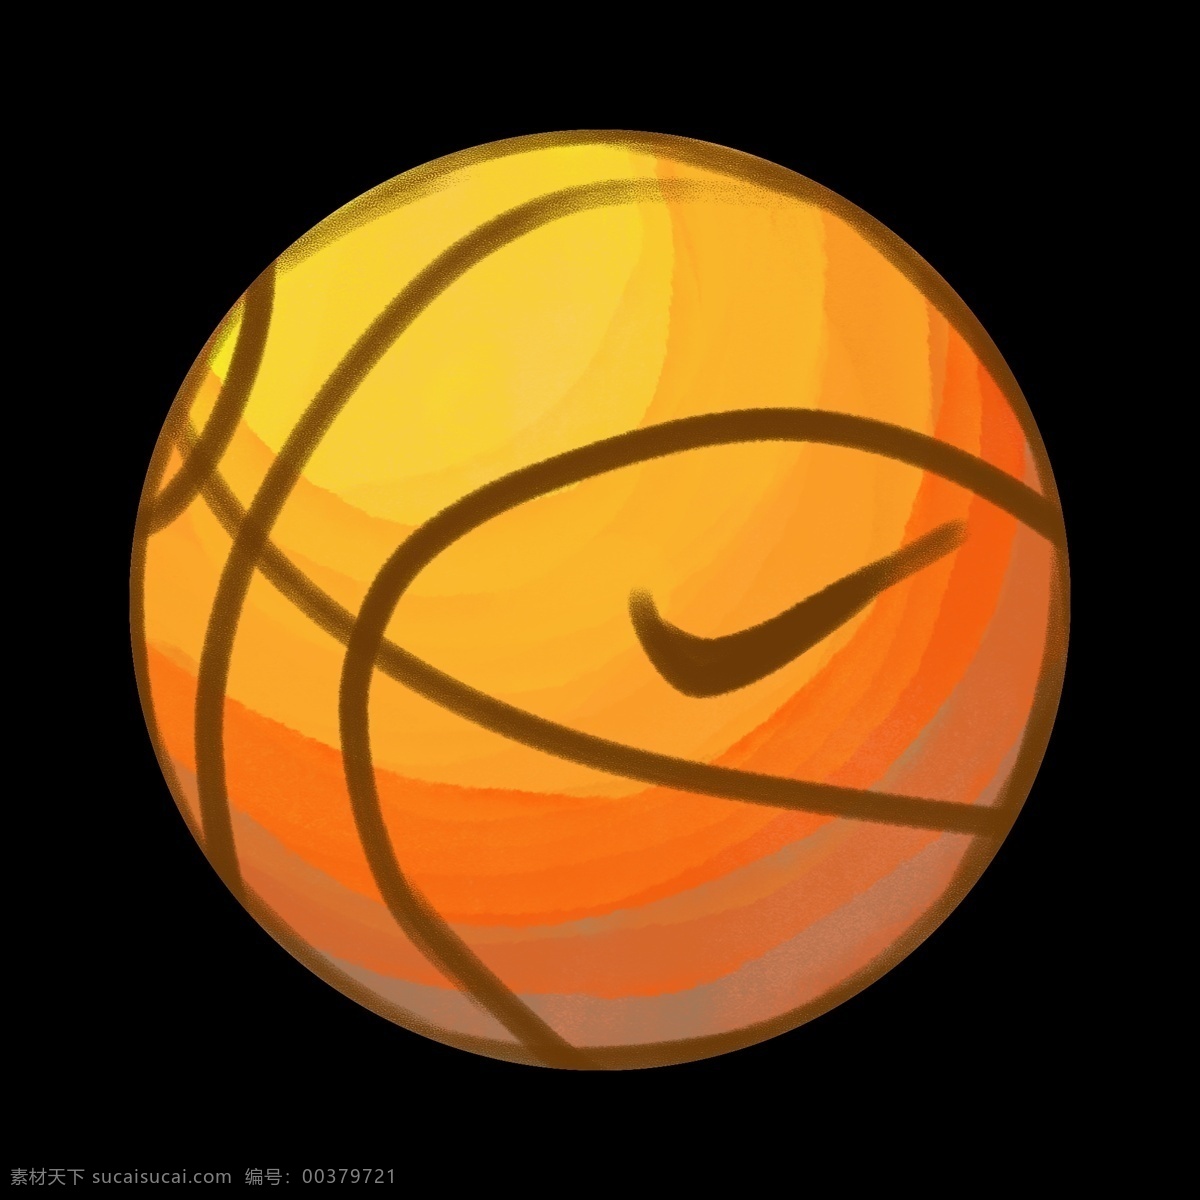 耐克 橙色 篮球 插画 黑色的对勾 卡通插画 篮球插画 皮球插画 篮球运动 篮球健身 耐克的篮球